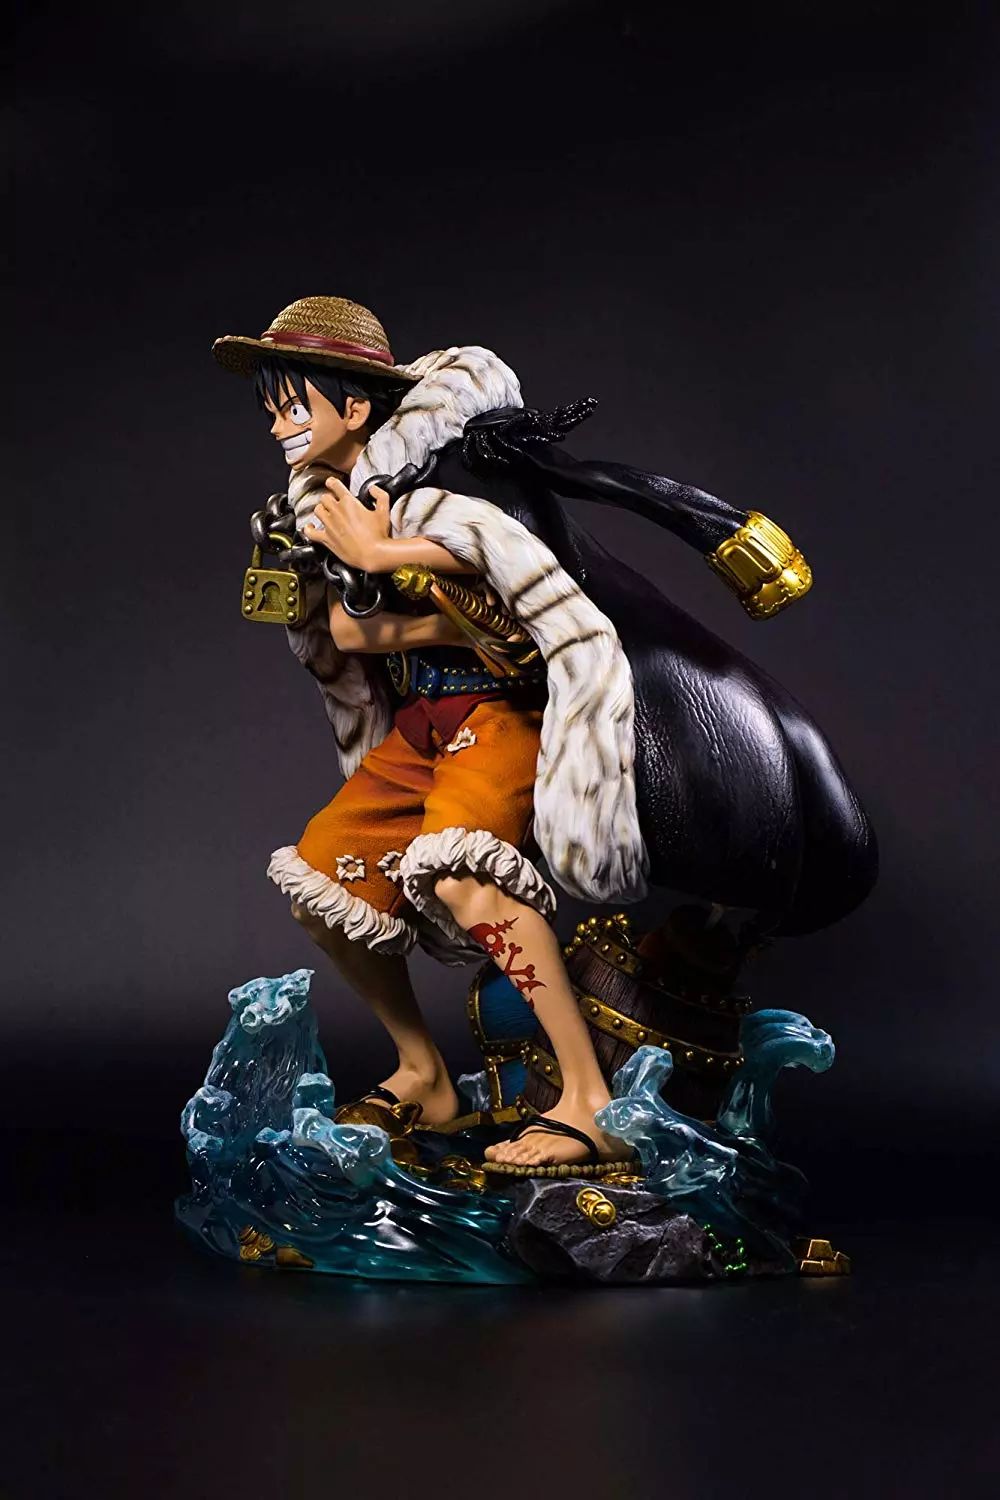 One Piece Log Collection封面主题高50cm的路飞手办（雕像）正式发布超 